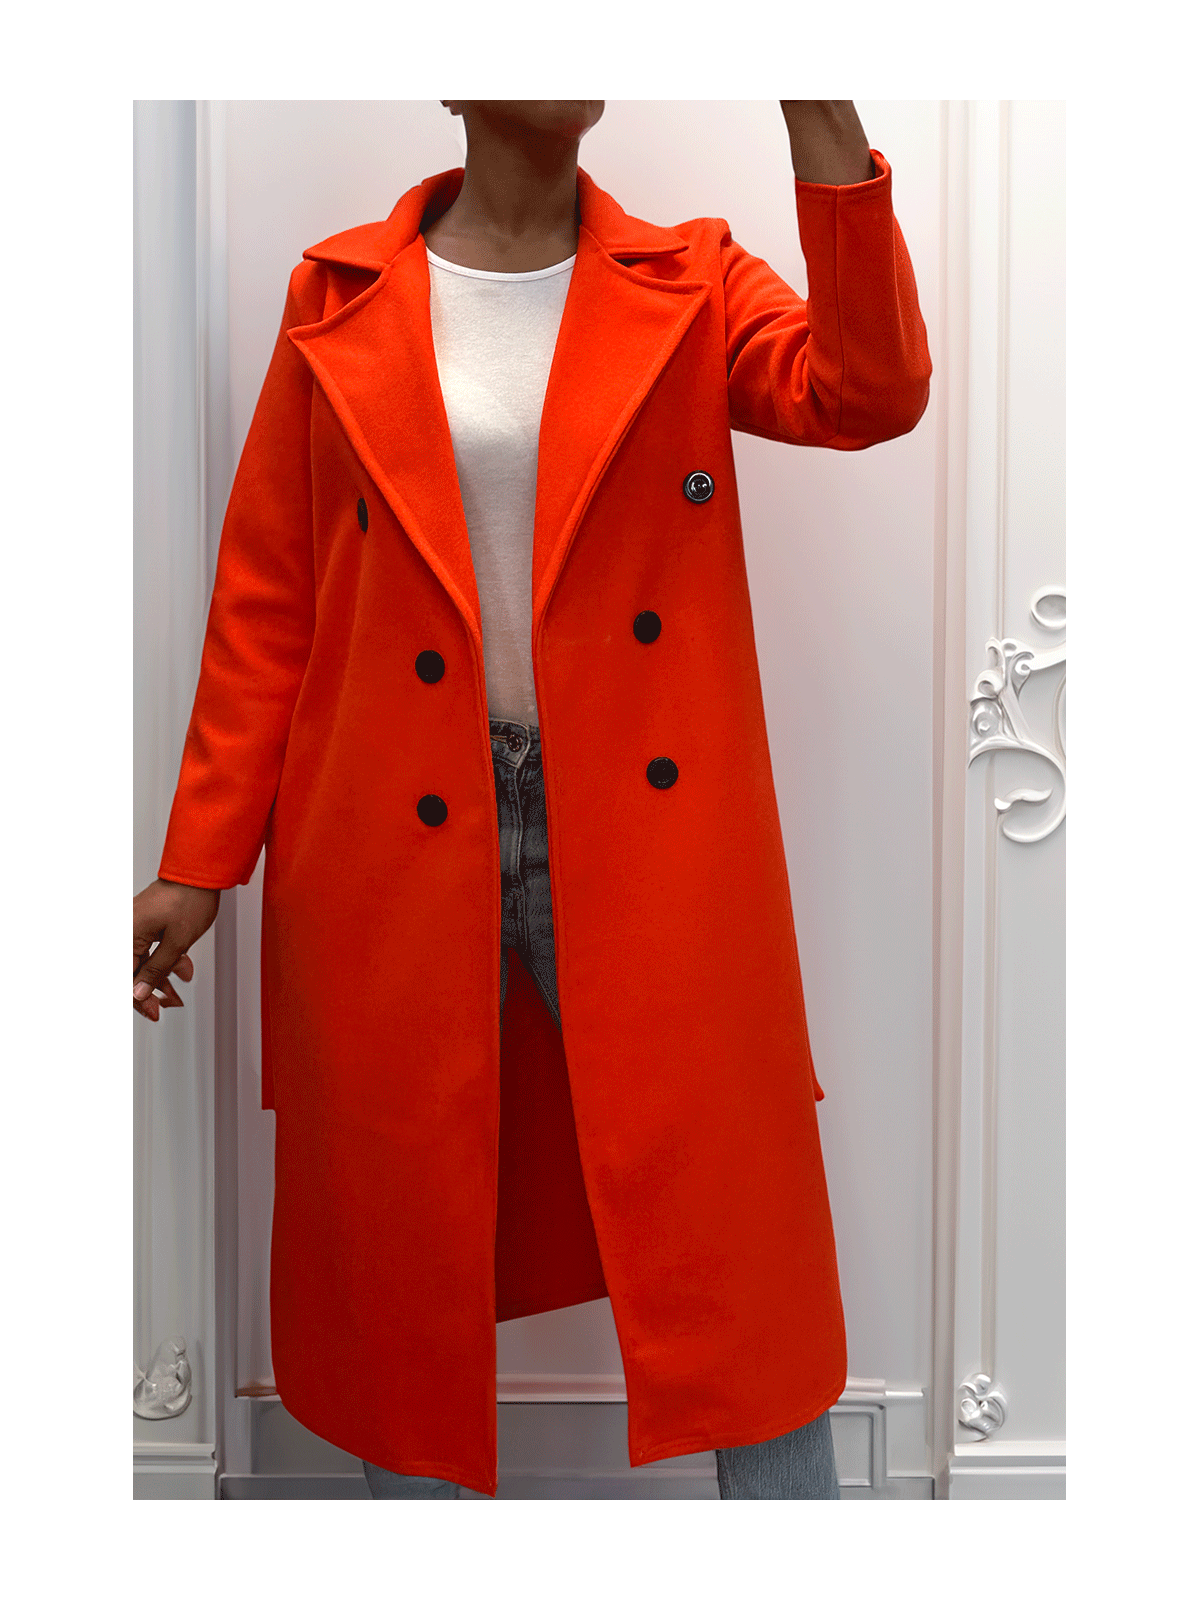 Long manteau croisé en orange avec poches boutons et ceinture - 2